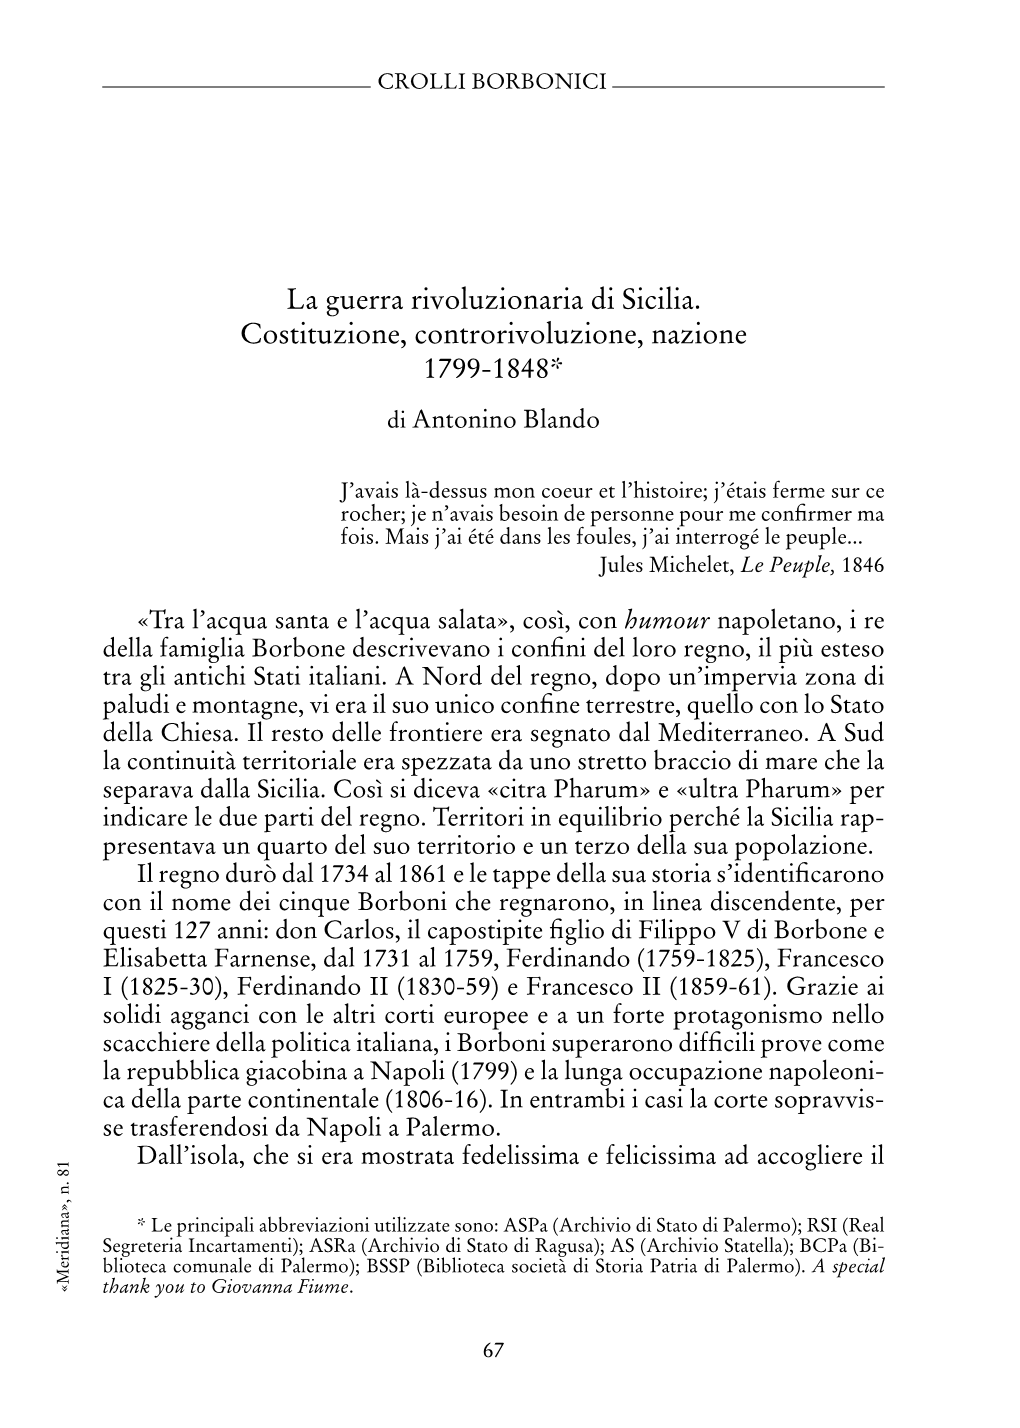 La Guerra Rivoluzionaria Di Sicilia. Costituzione, Controrivoluzione, Nazione 1799-1848*